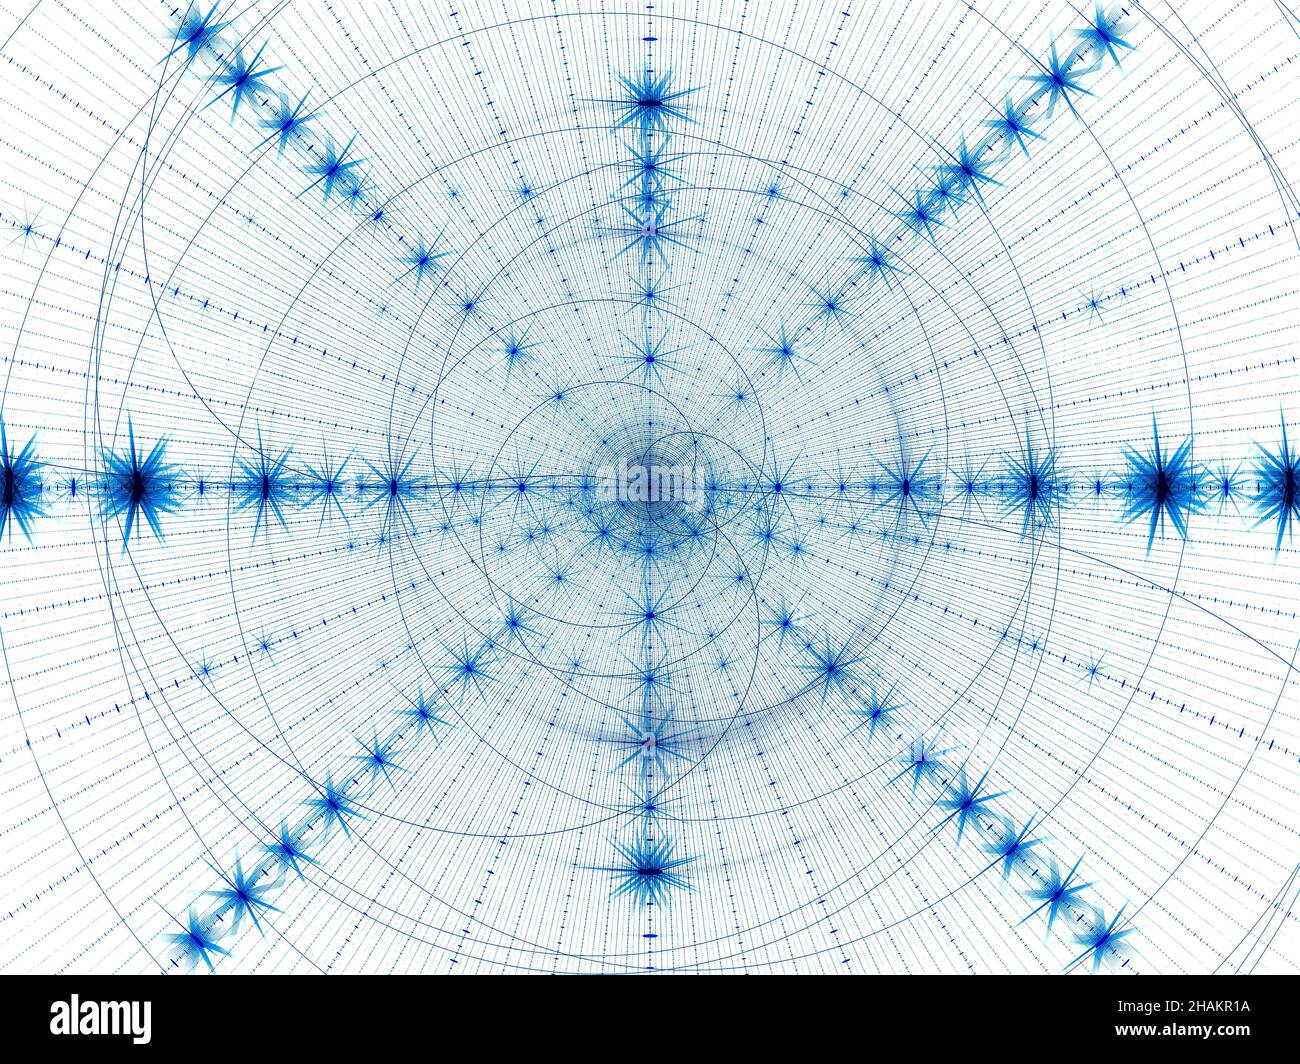 Motif blanc et bleu - rayons et spirale - illustration abstraite Banque D'Images